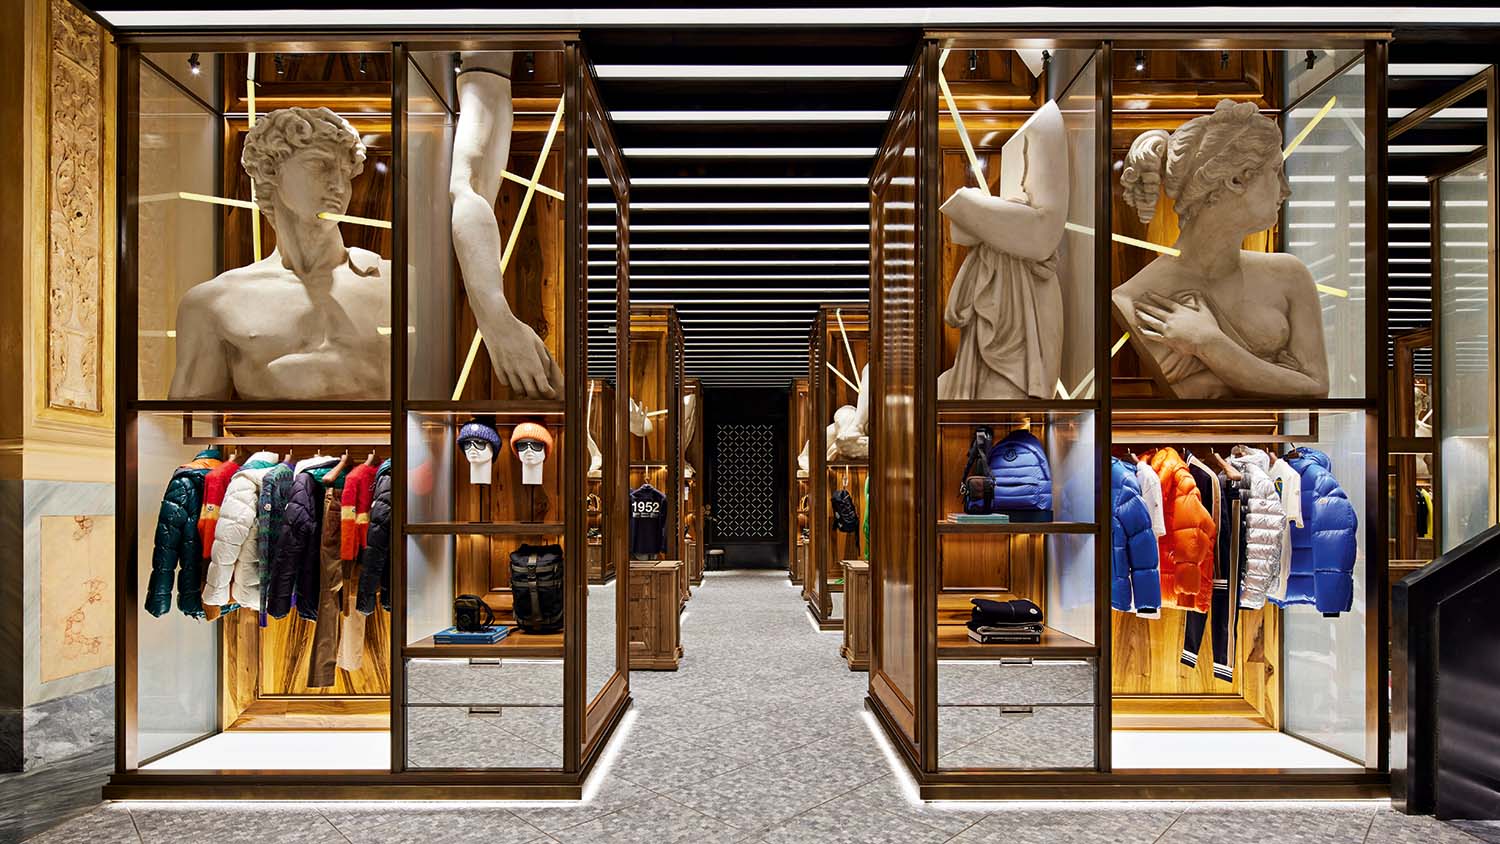 Louis Vuitton Bologna store, Italy